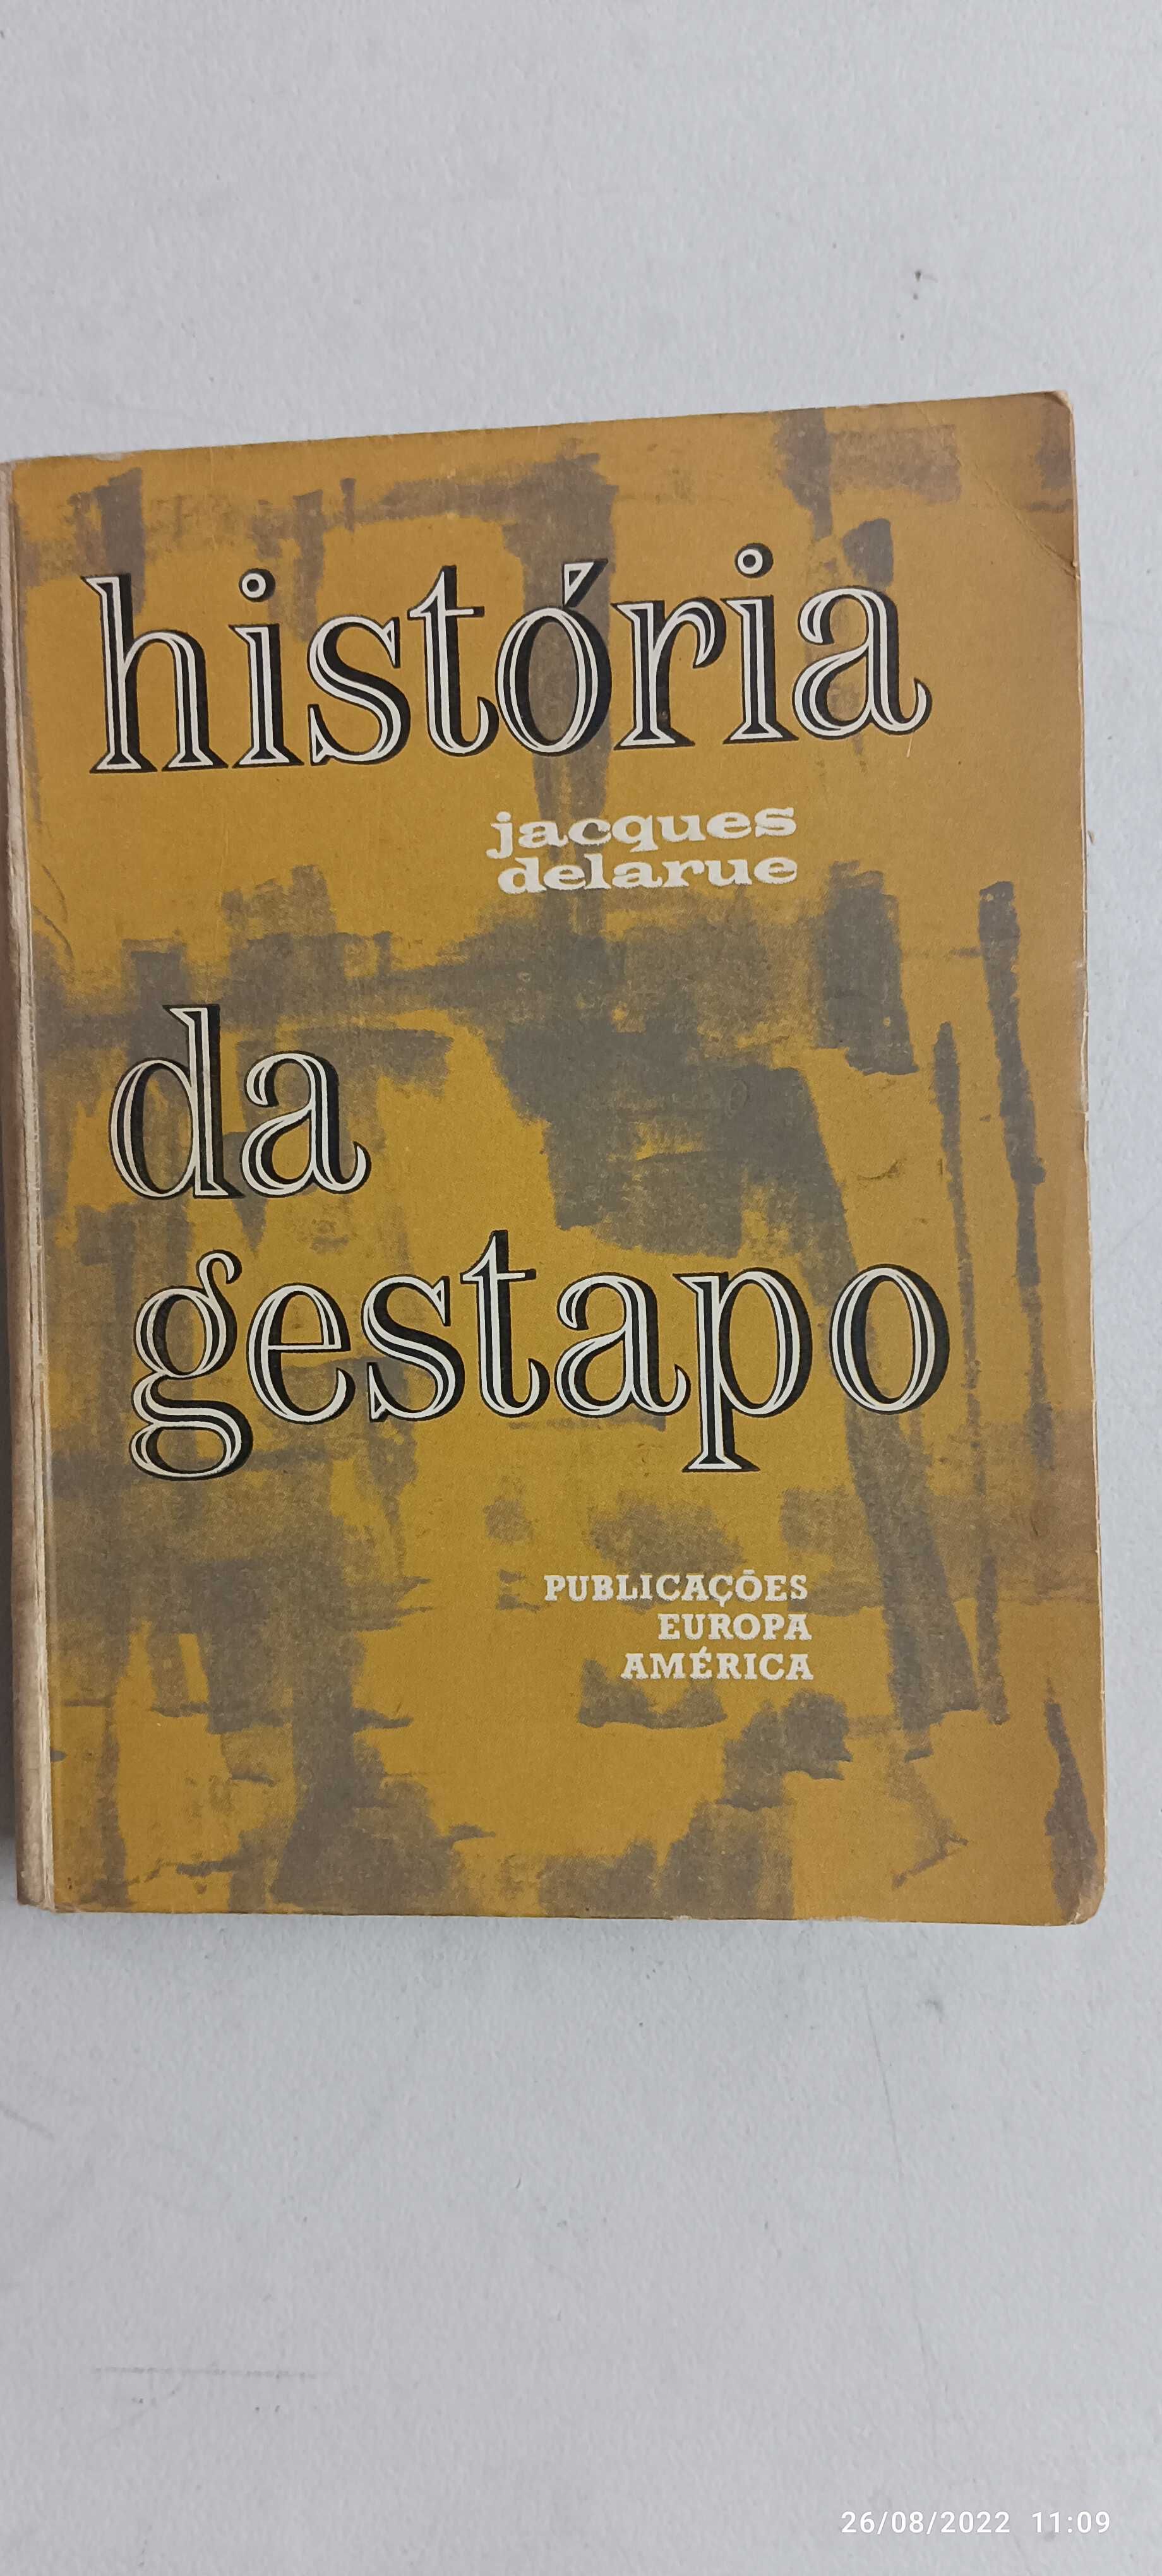 Livro Pa-1 - Jacques delarue - História da gestapo